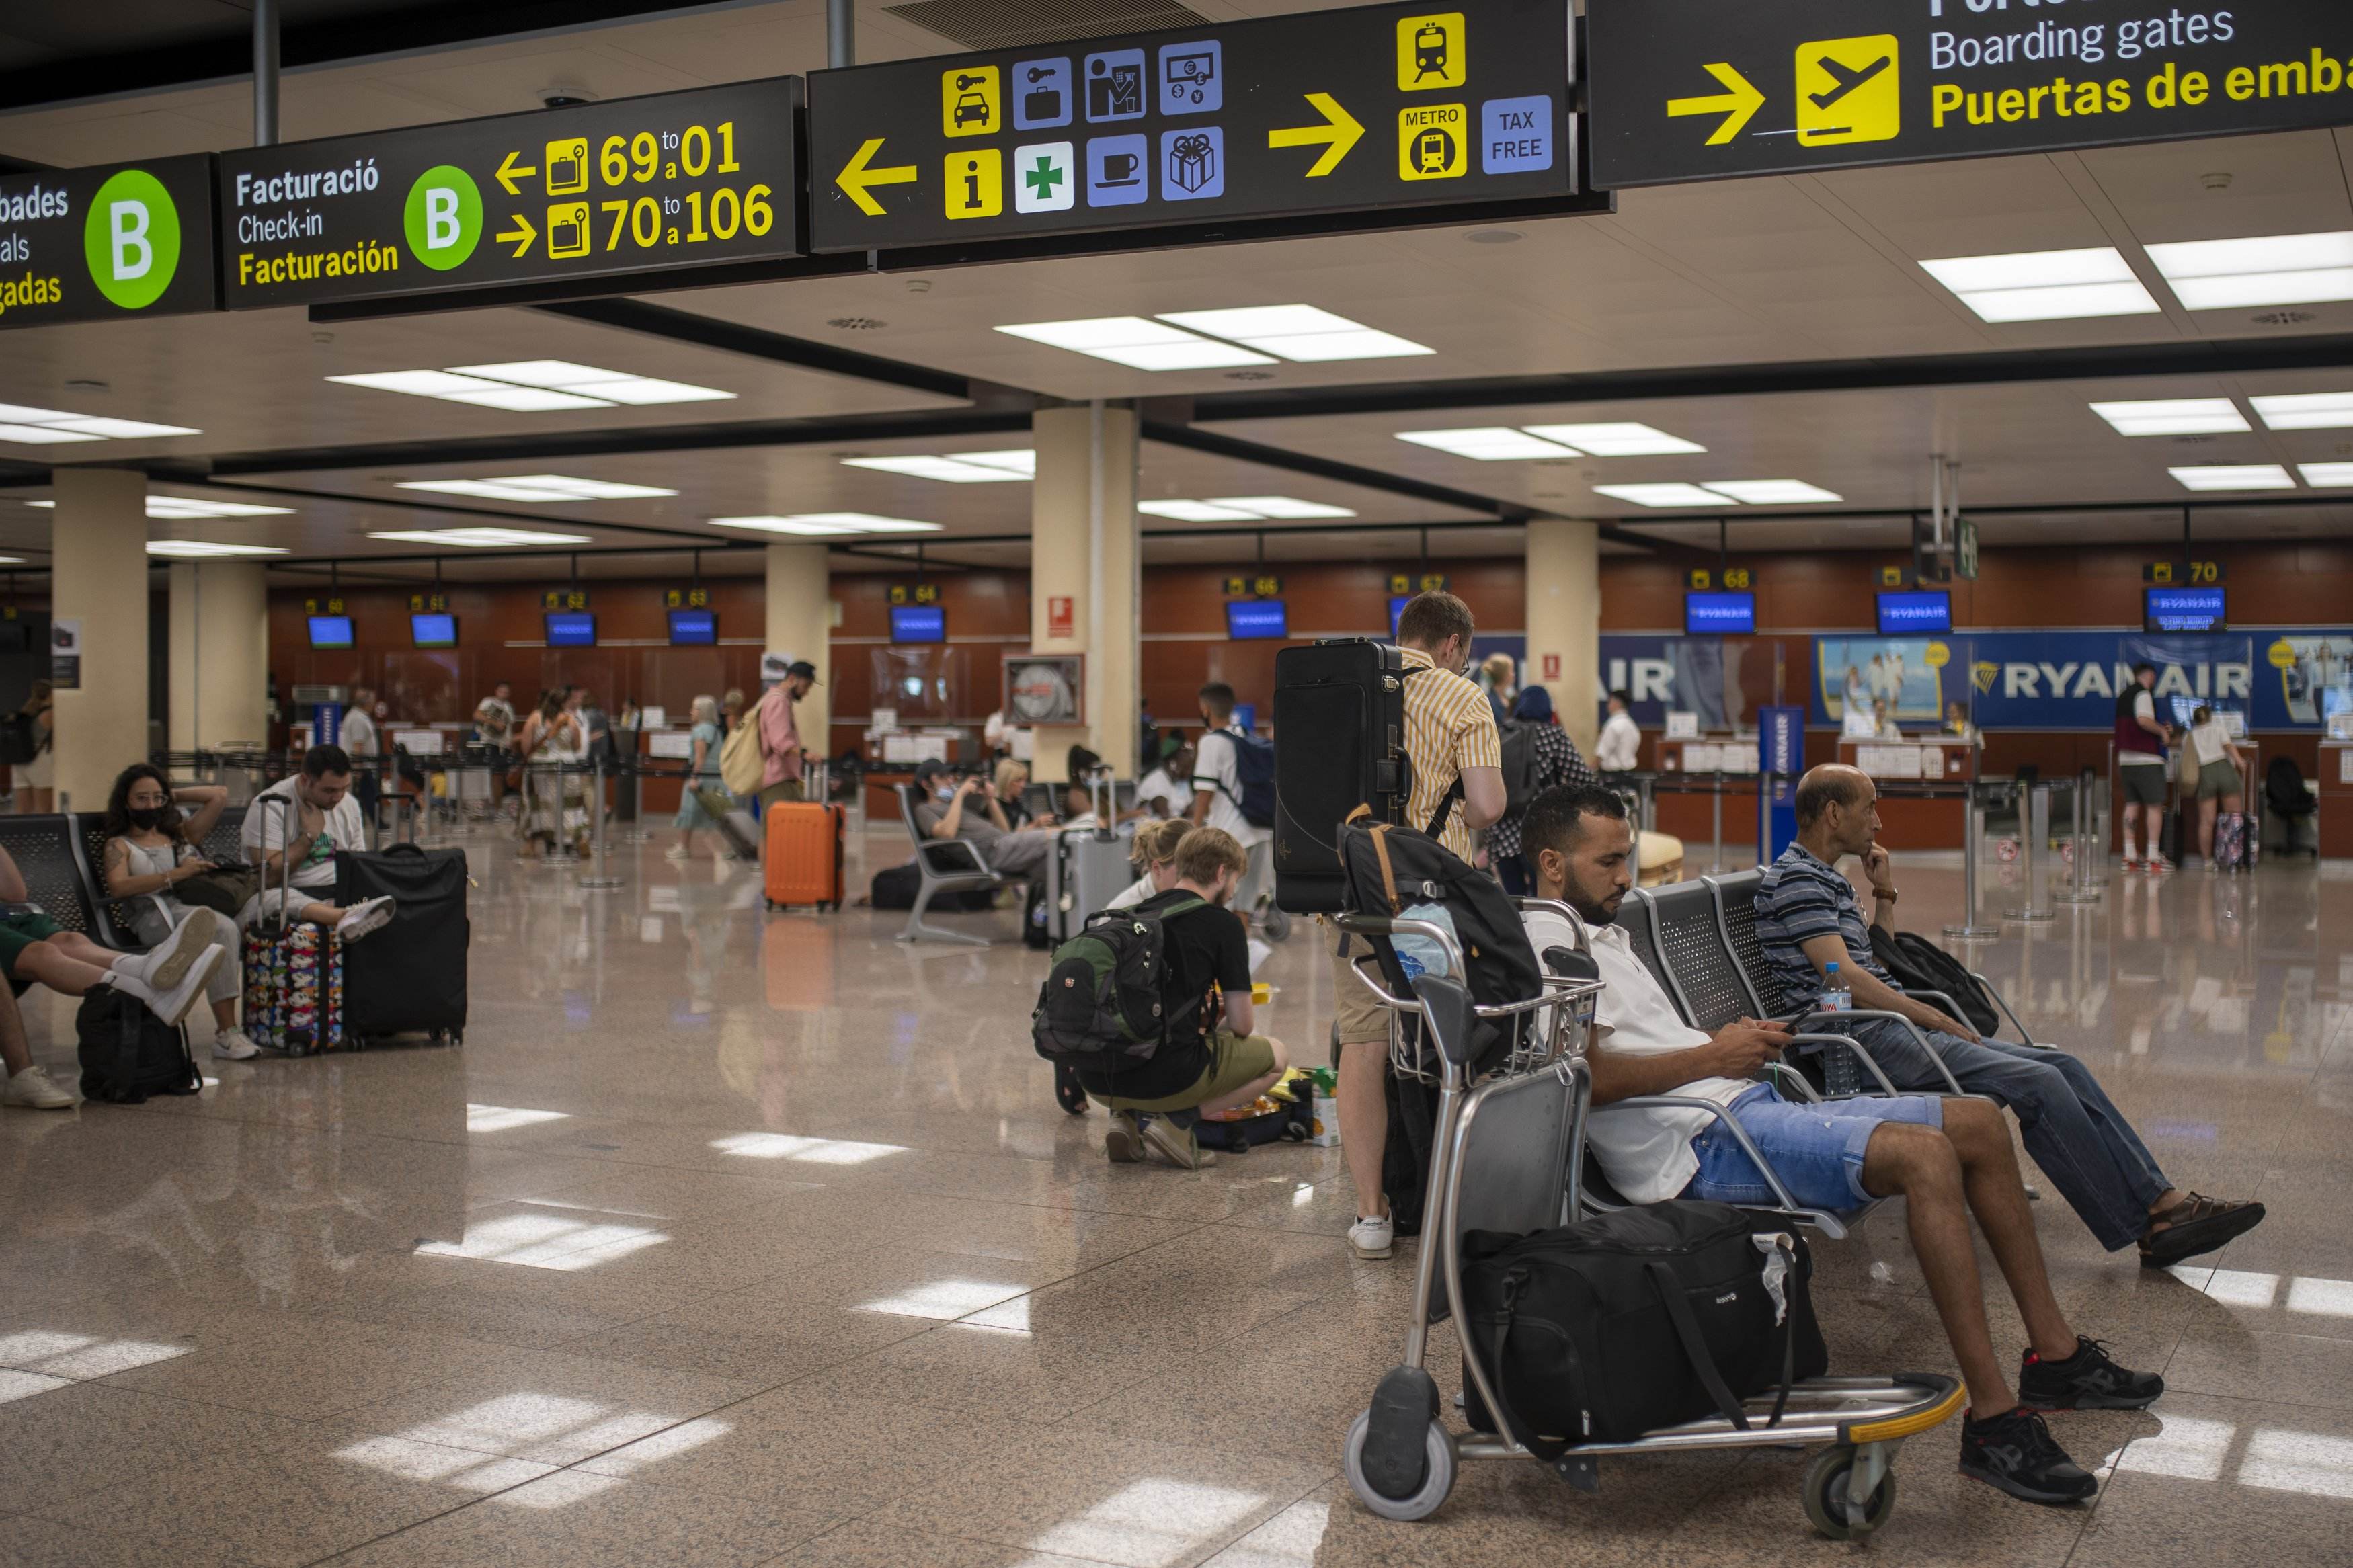 EuropaPress 4619840 diverses persones esperen assegudes maletes aeroport josep tarradellas